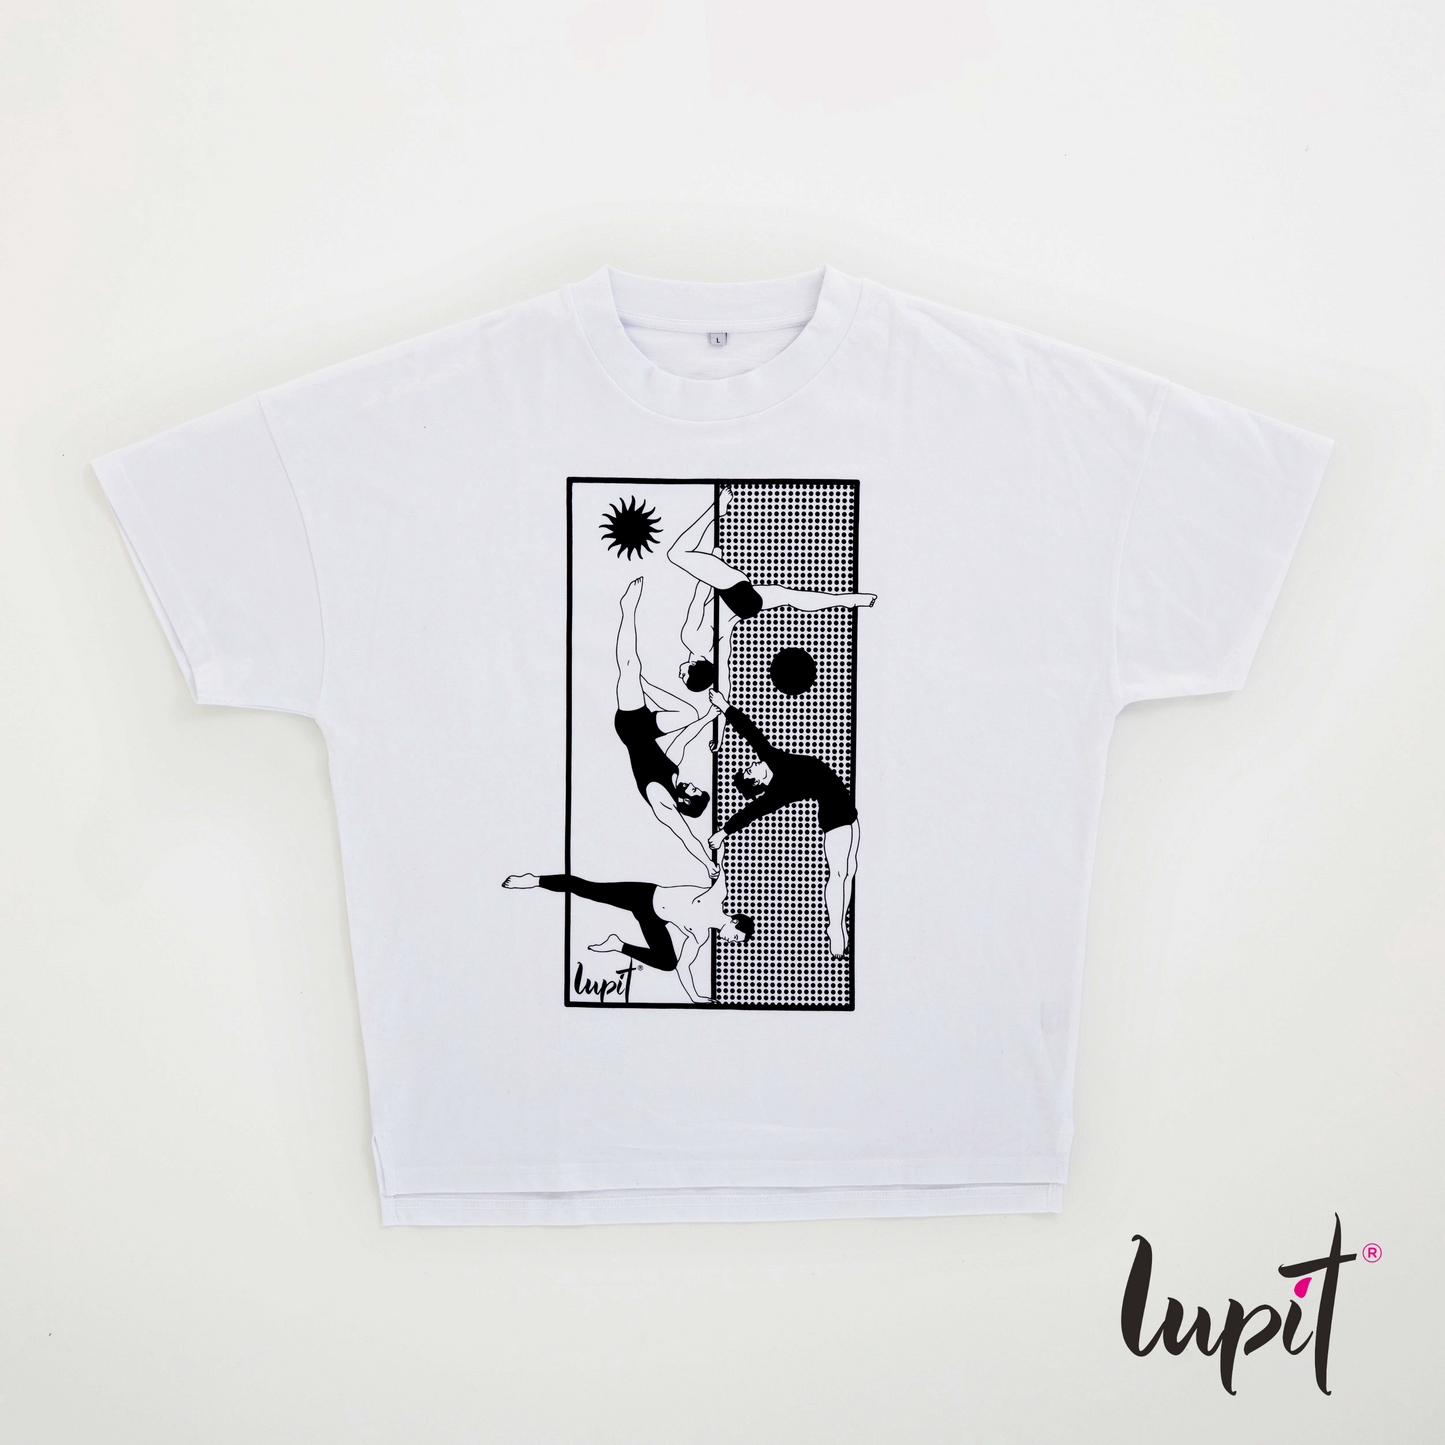 Lupit Merch | Oversized T-shirt